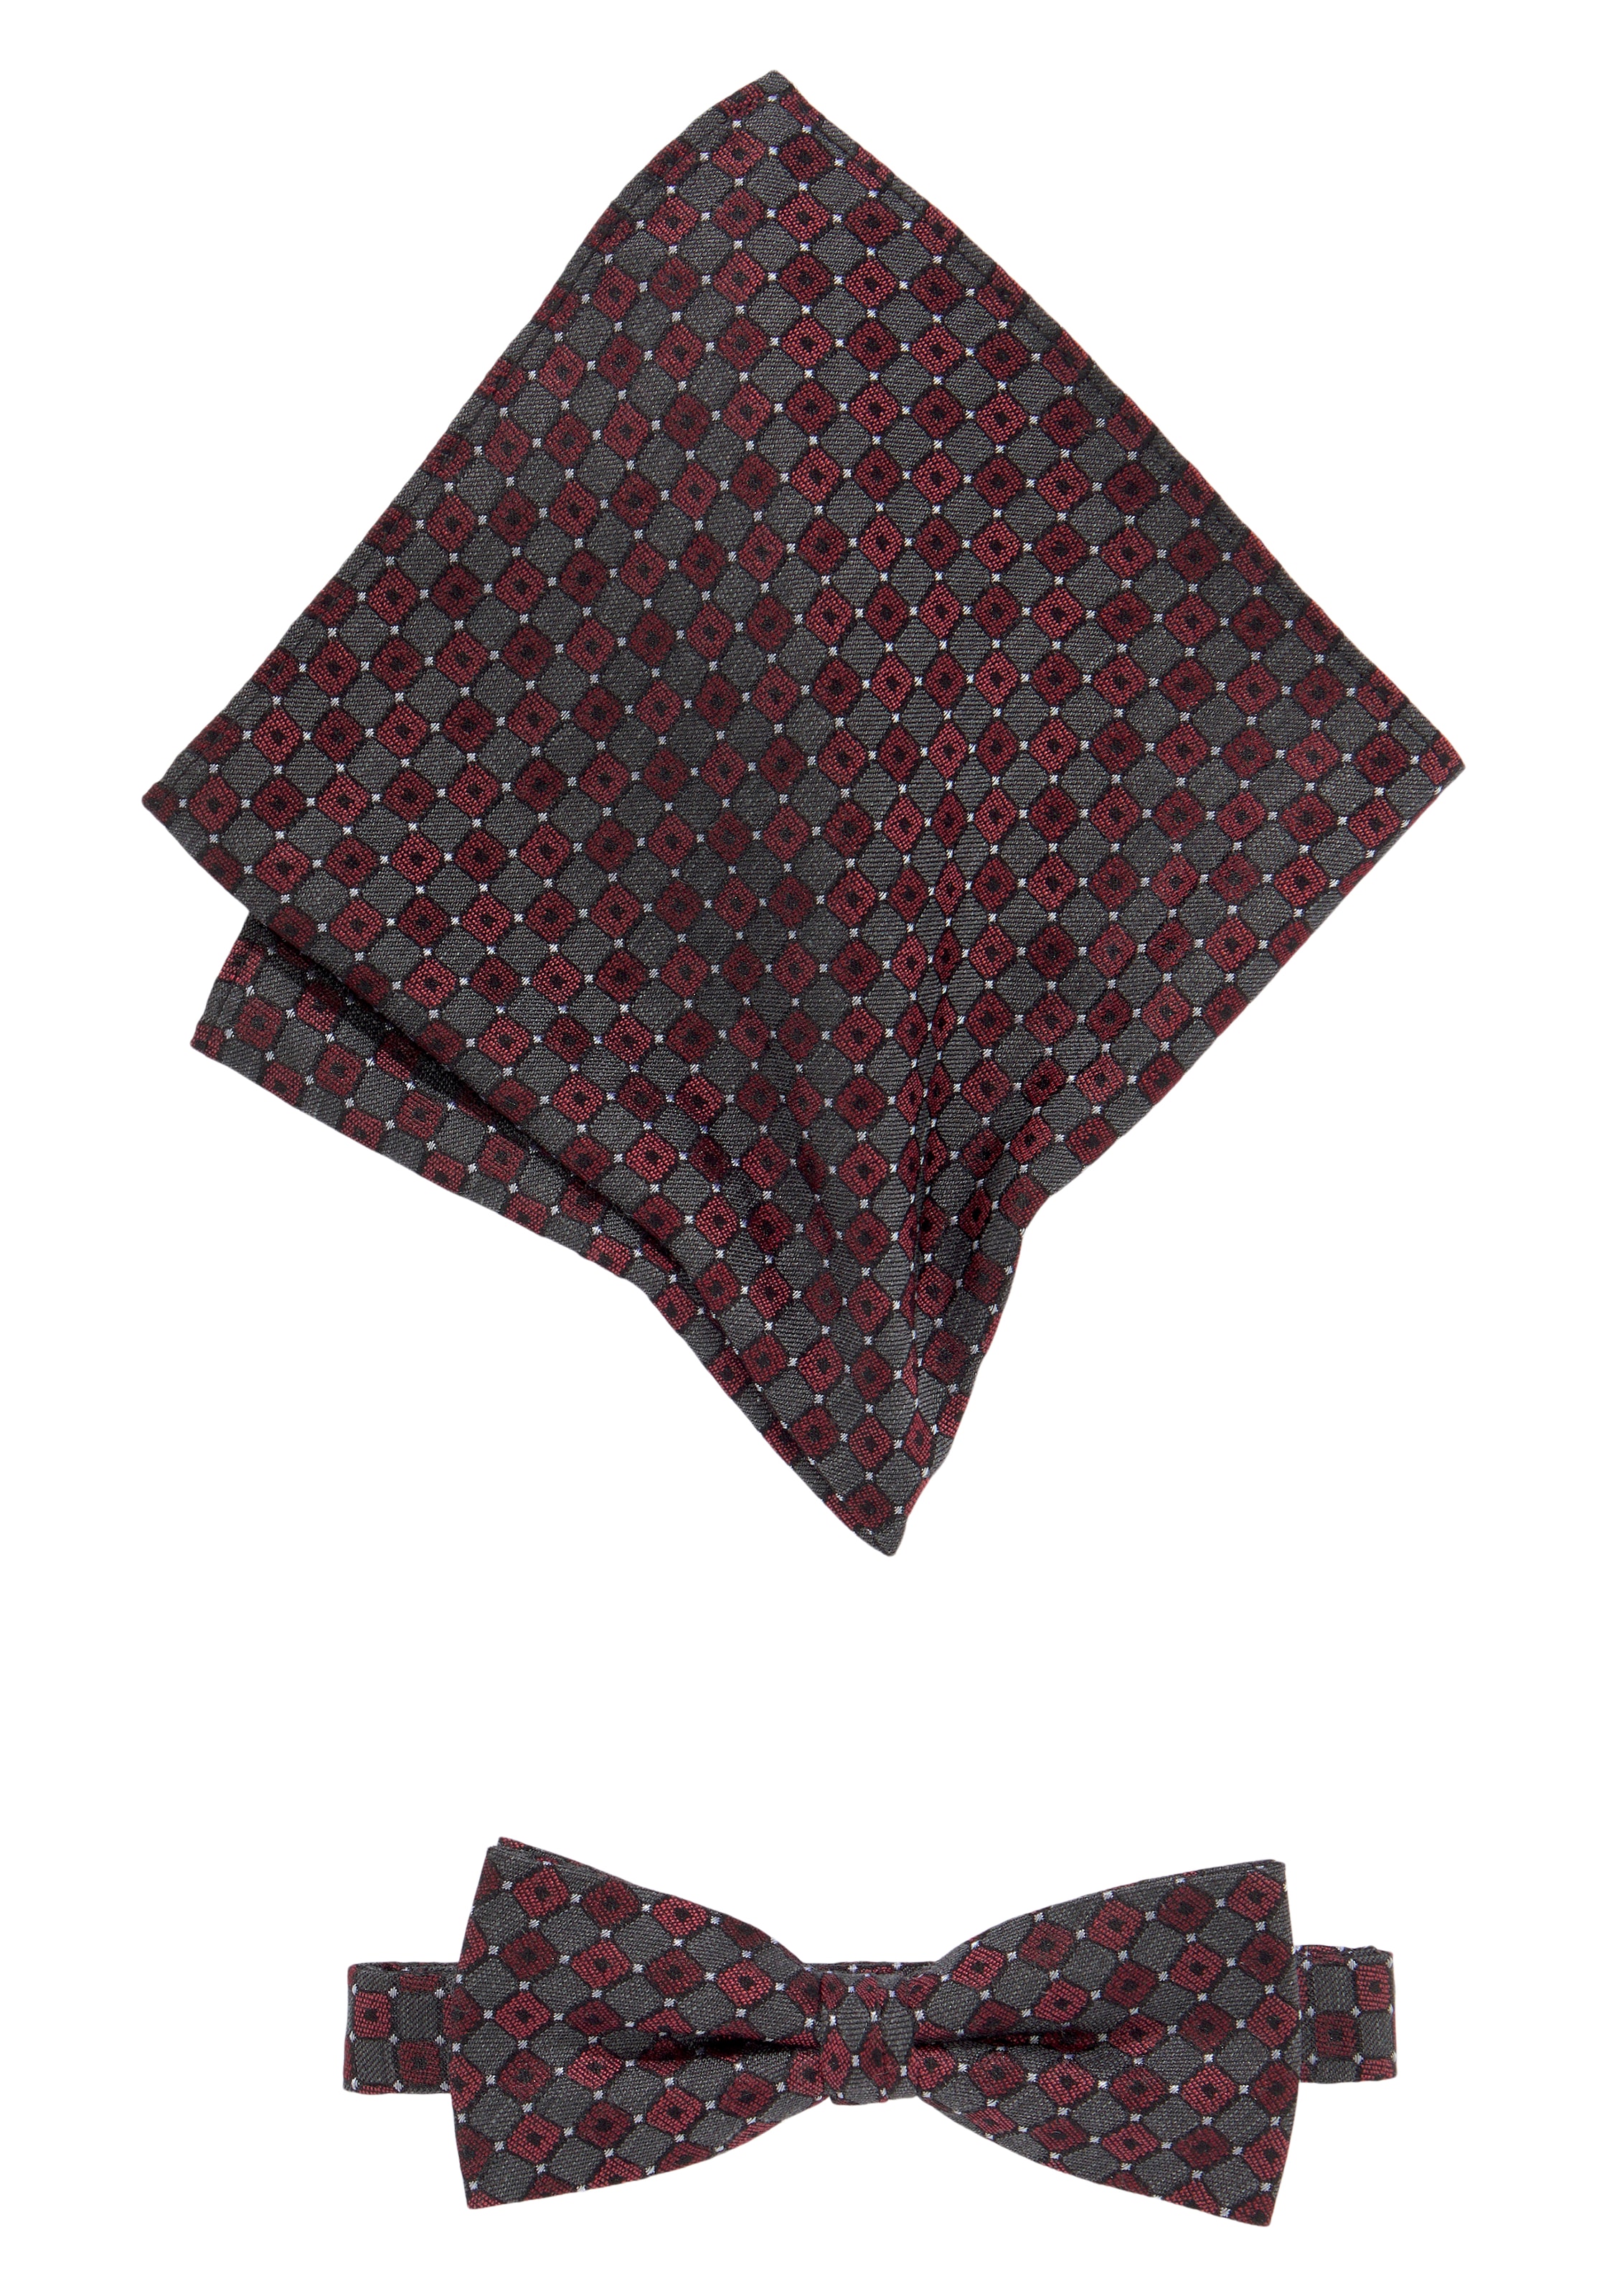 ➤ Krawatten versandkostenfrei - ohne Mindestbestellwert shoppen